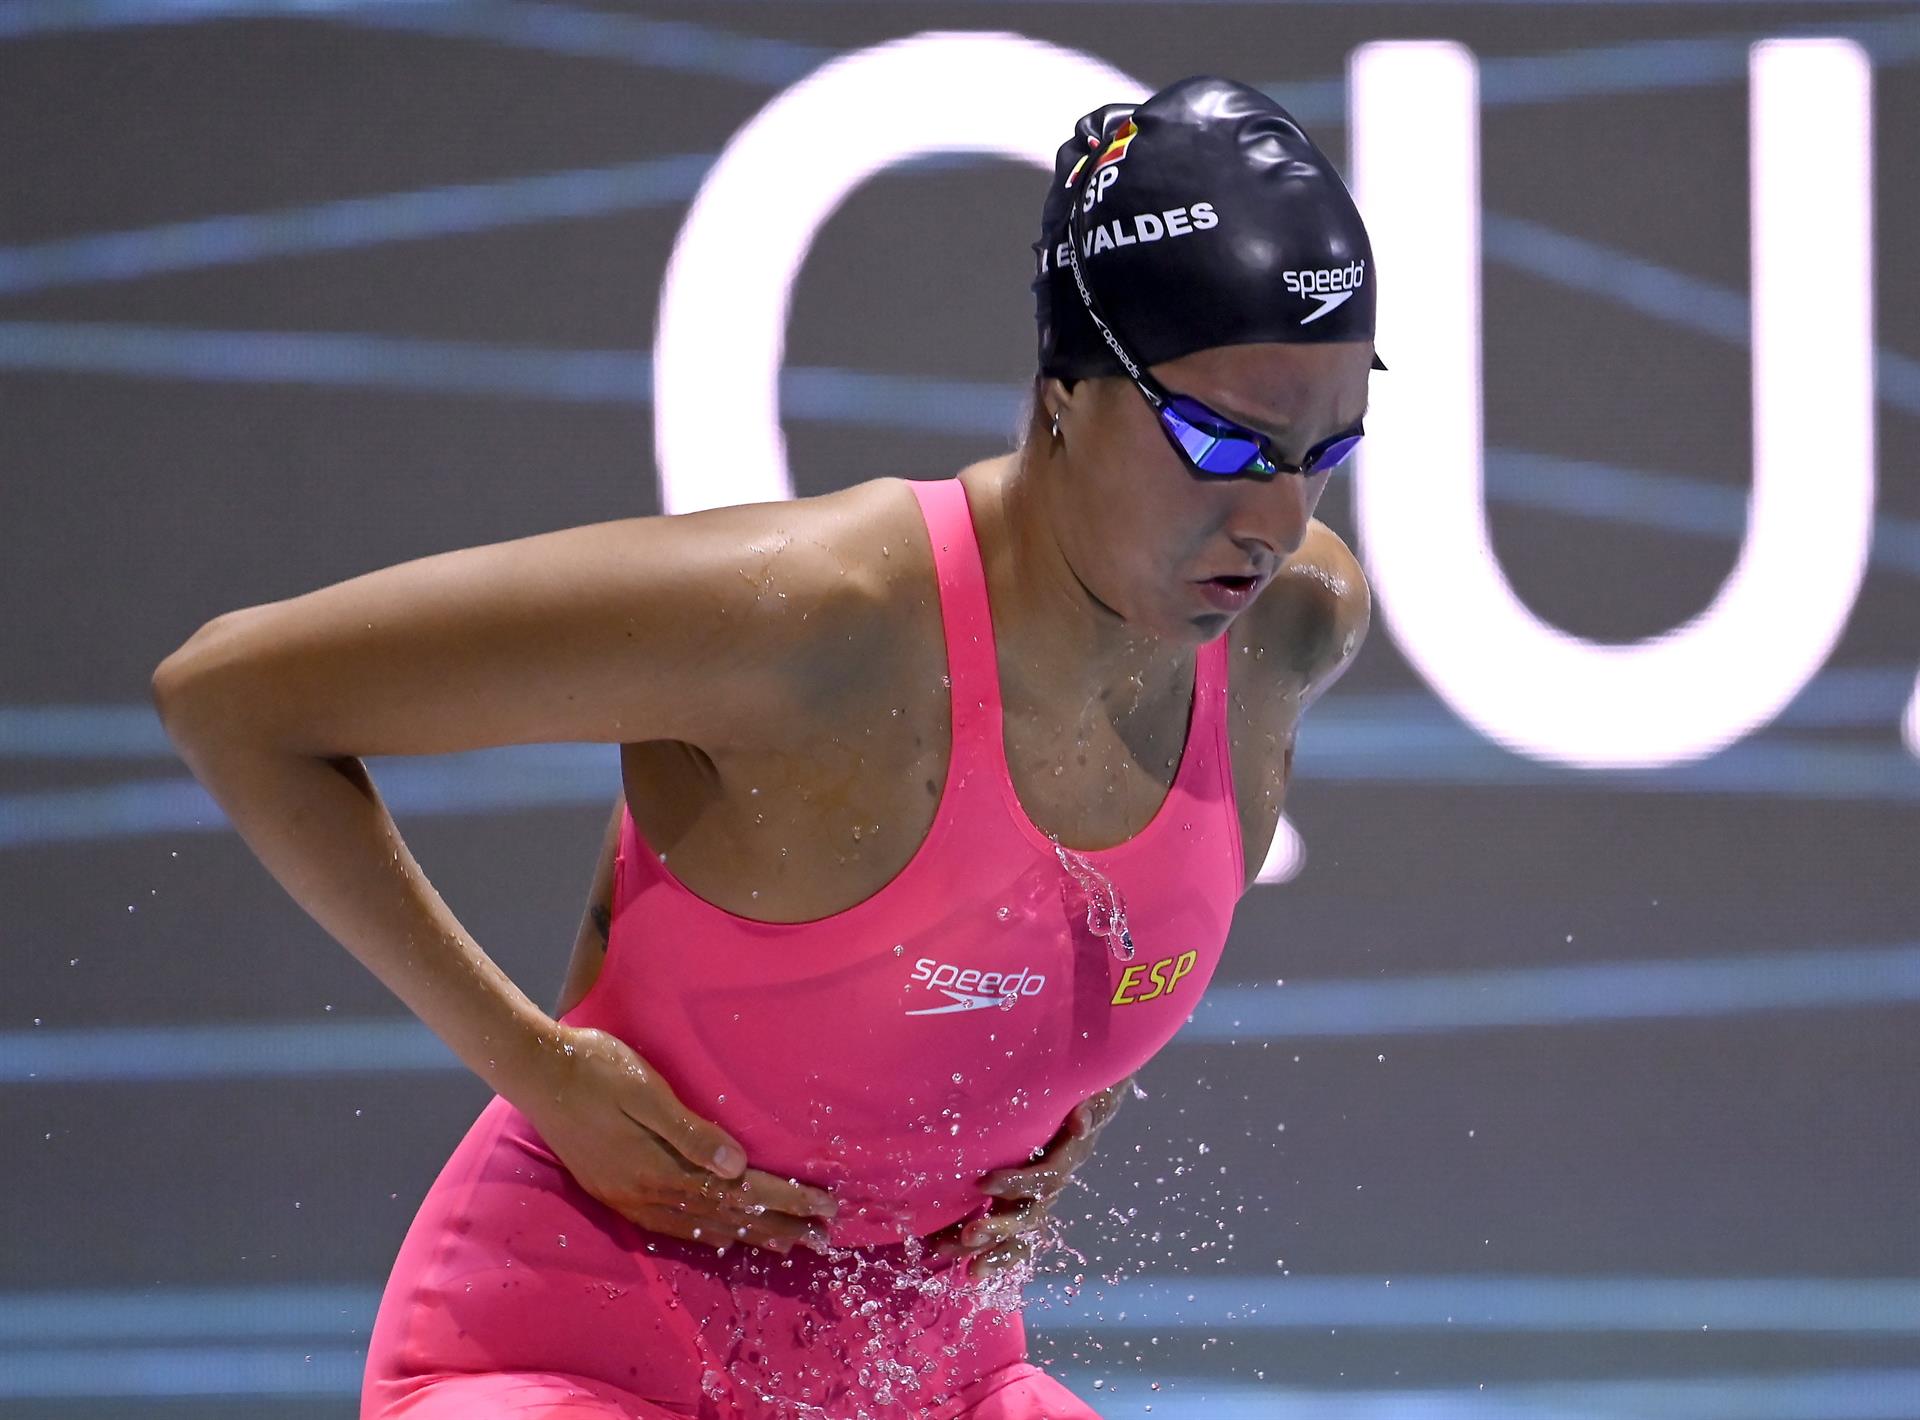 La nadadora malagueña María de Valdés. EFE/Tamas Kovacs/ARCHIVO